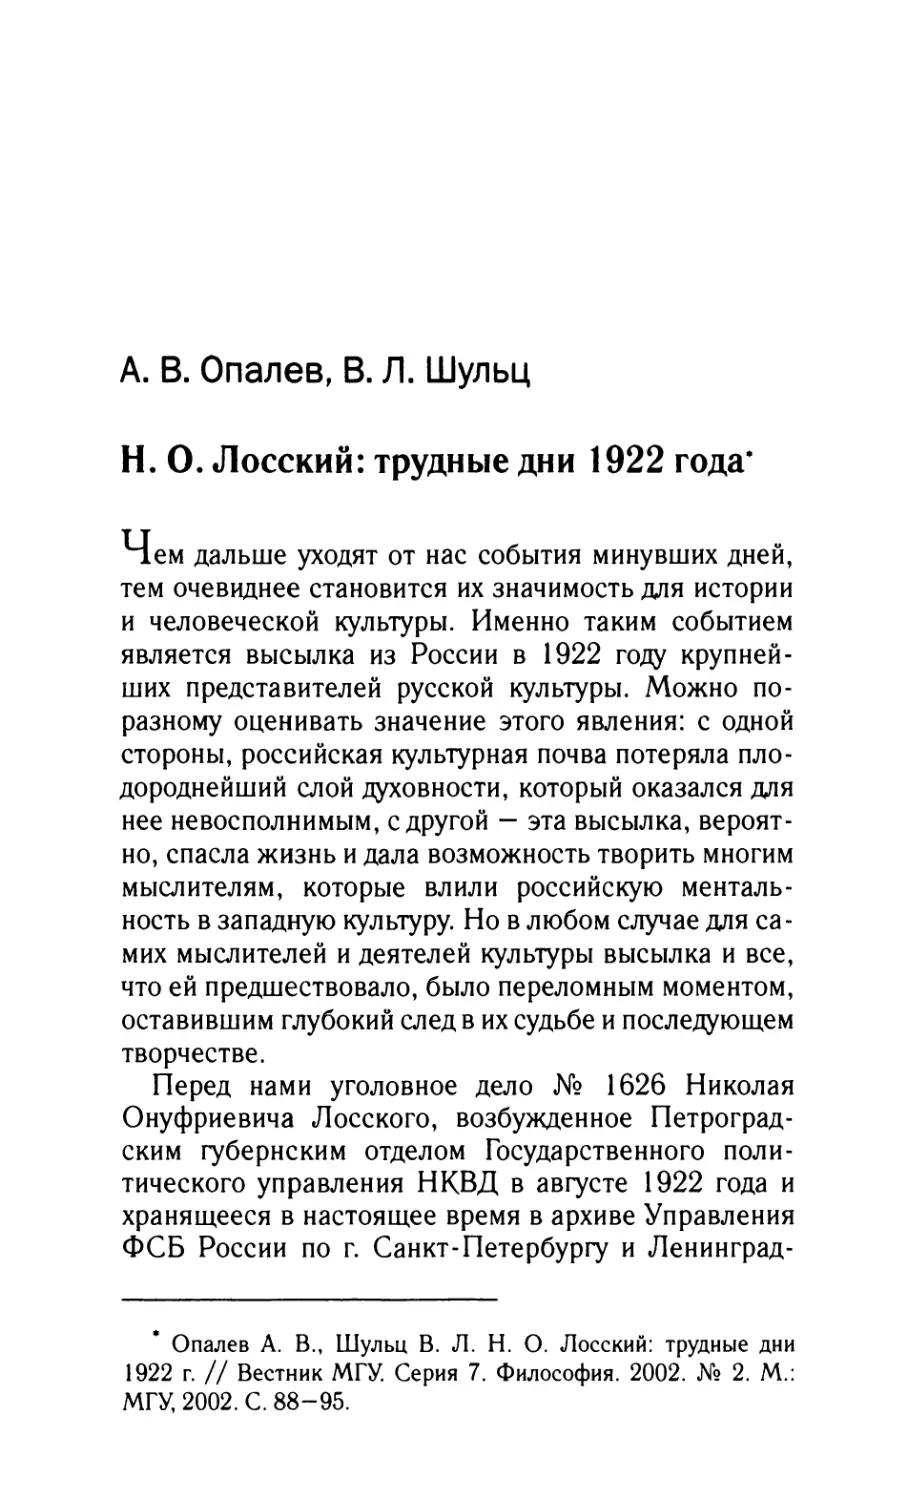 Опалев А.В., Шульц В.Л. Лосский: трудные дни 1922 года